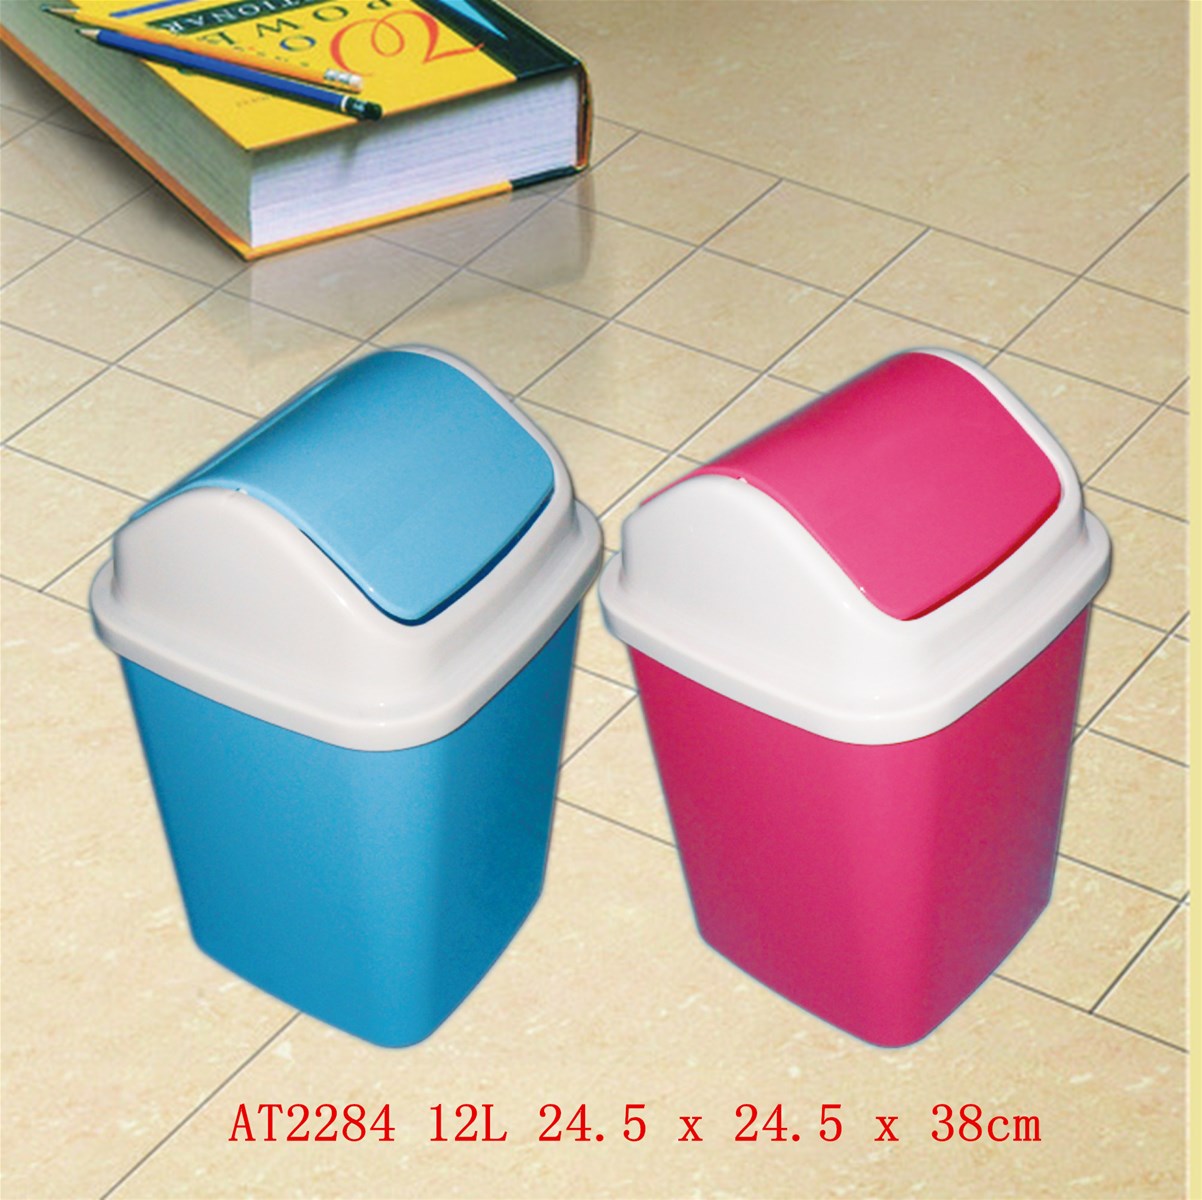 New design low price home PP plastic dustbin series rubbish bin